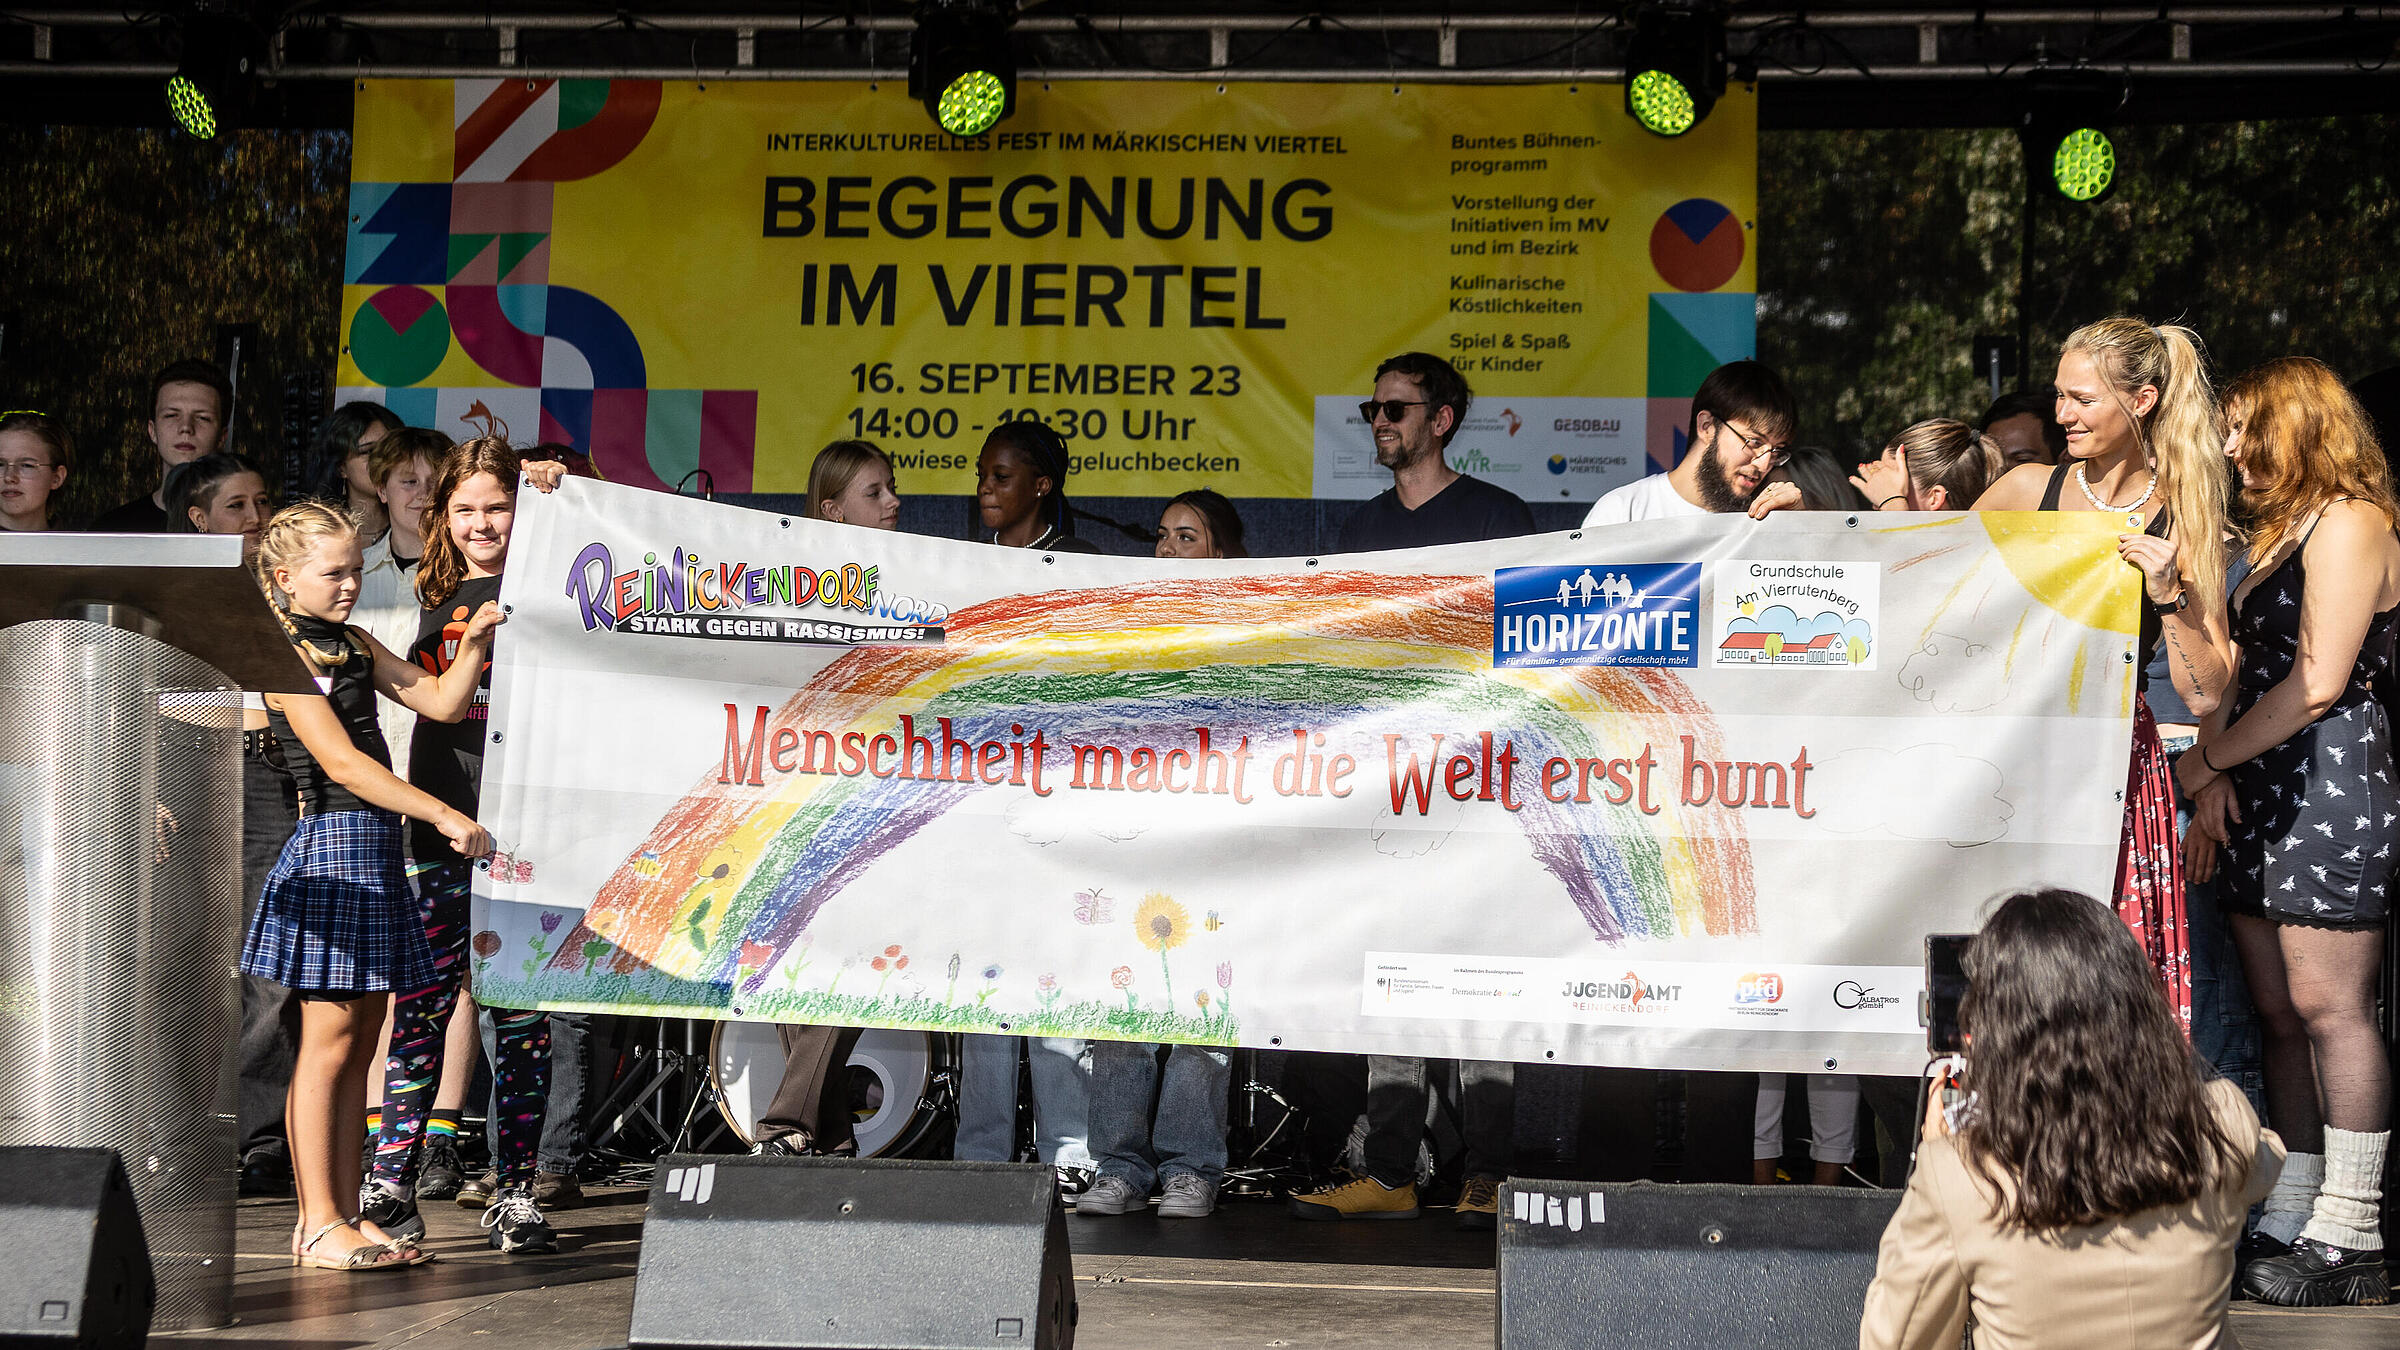 Außenaufnahme zeigt eine Gruppe vpn Jugendlichen, die auf einer Bühne ein Banner mit der Aufschrift "Menschheit macht die Welt erst bunt" hochalten.